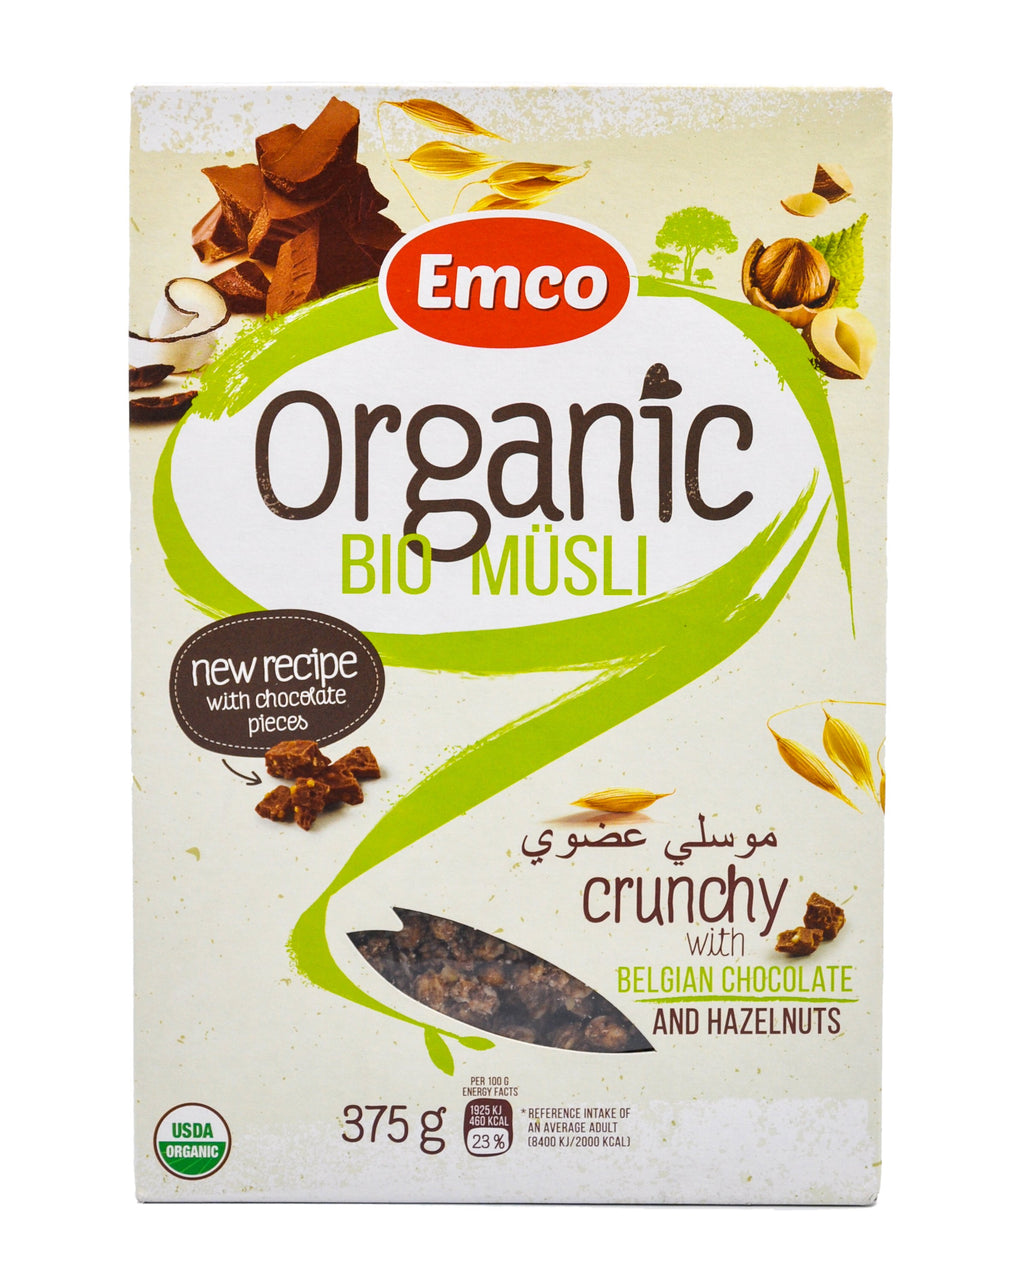 Crunchy müsli with chocolate and hazelnuts